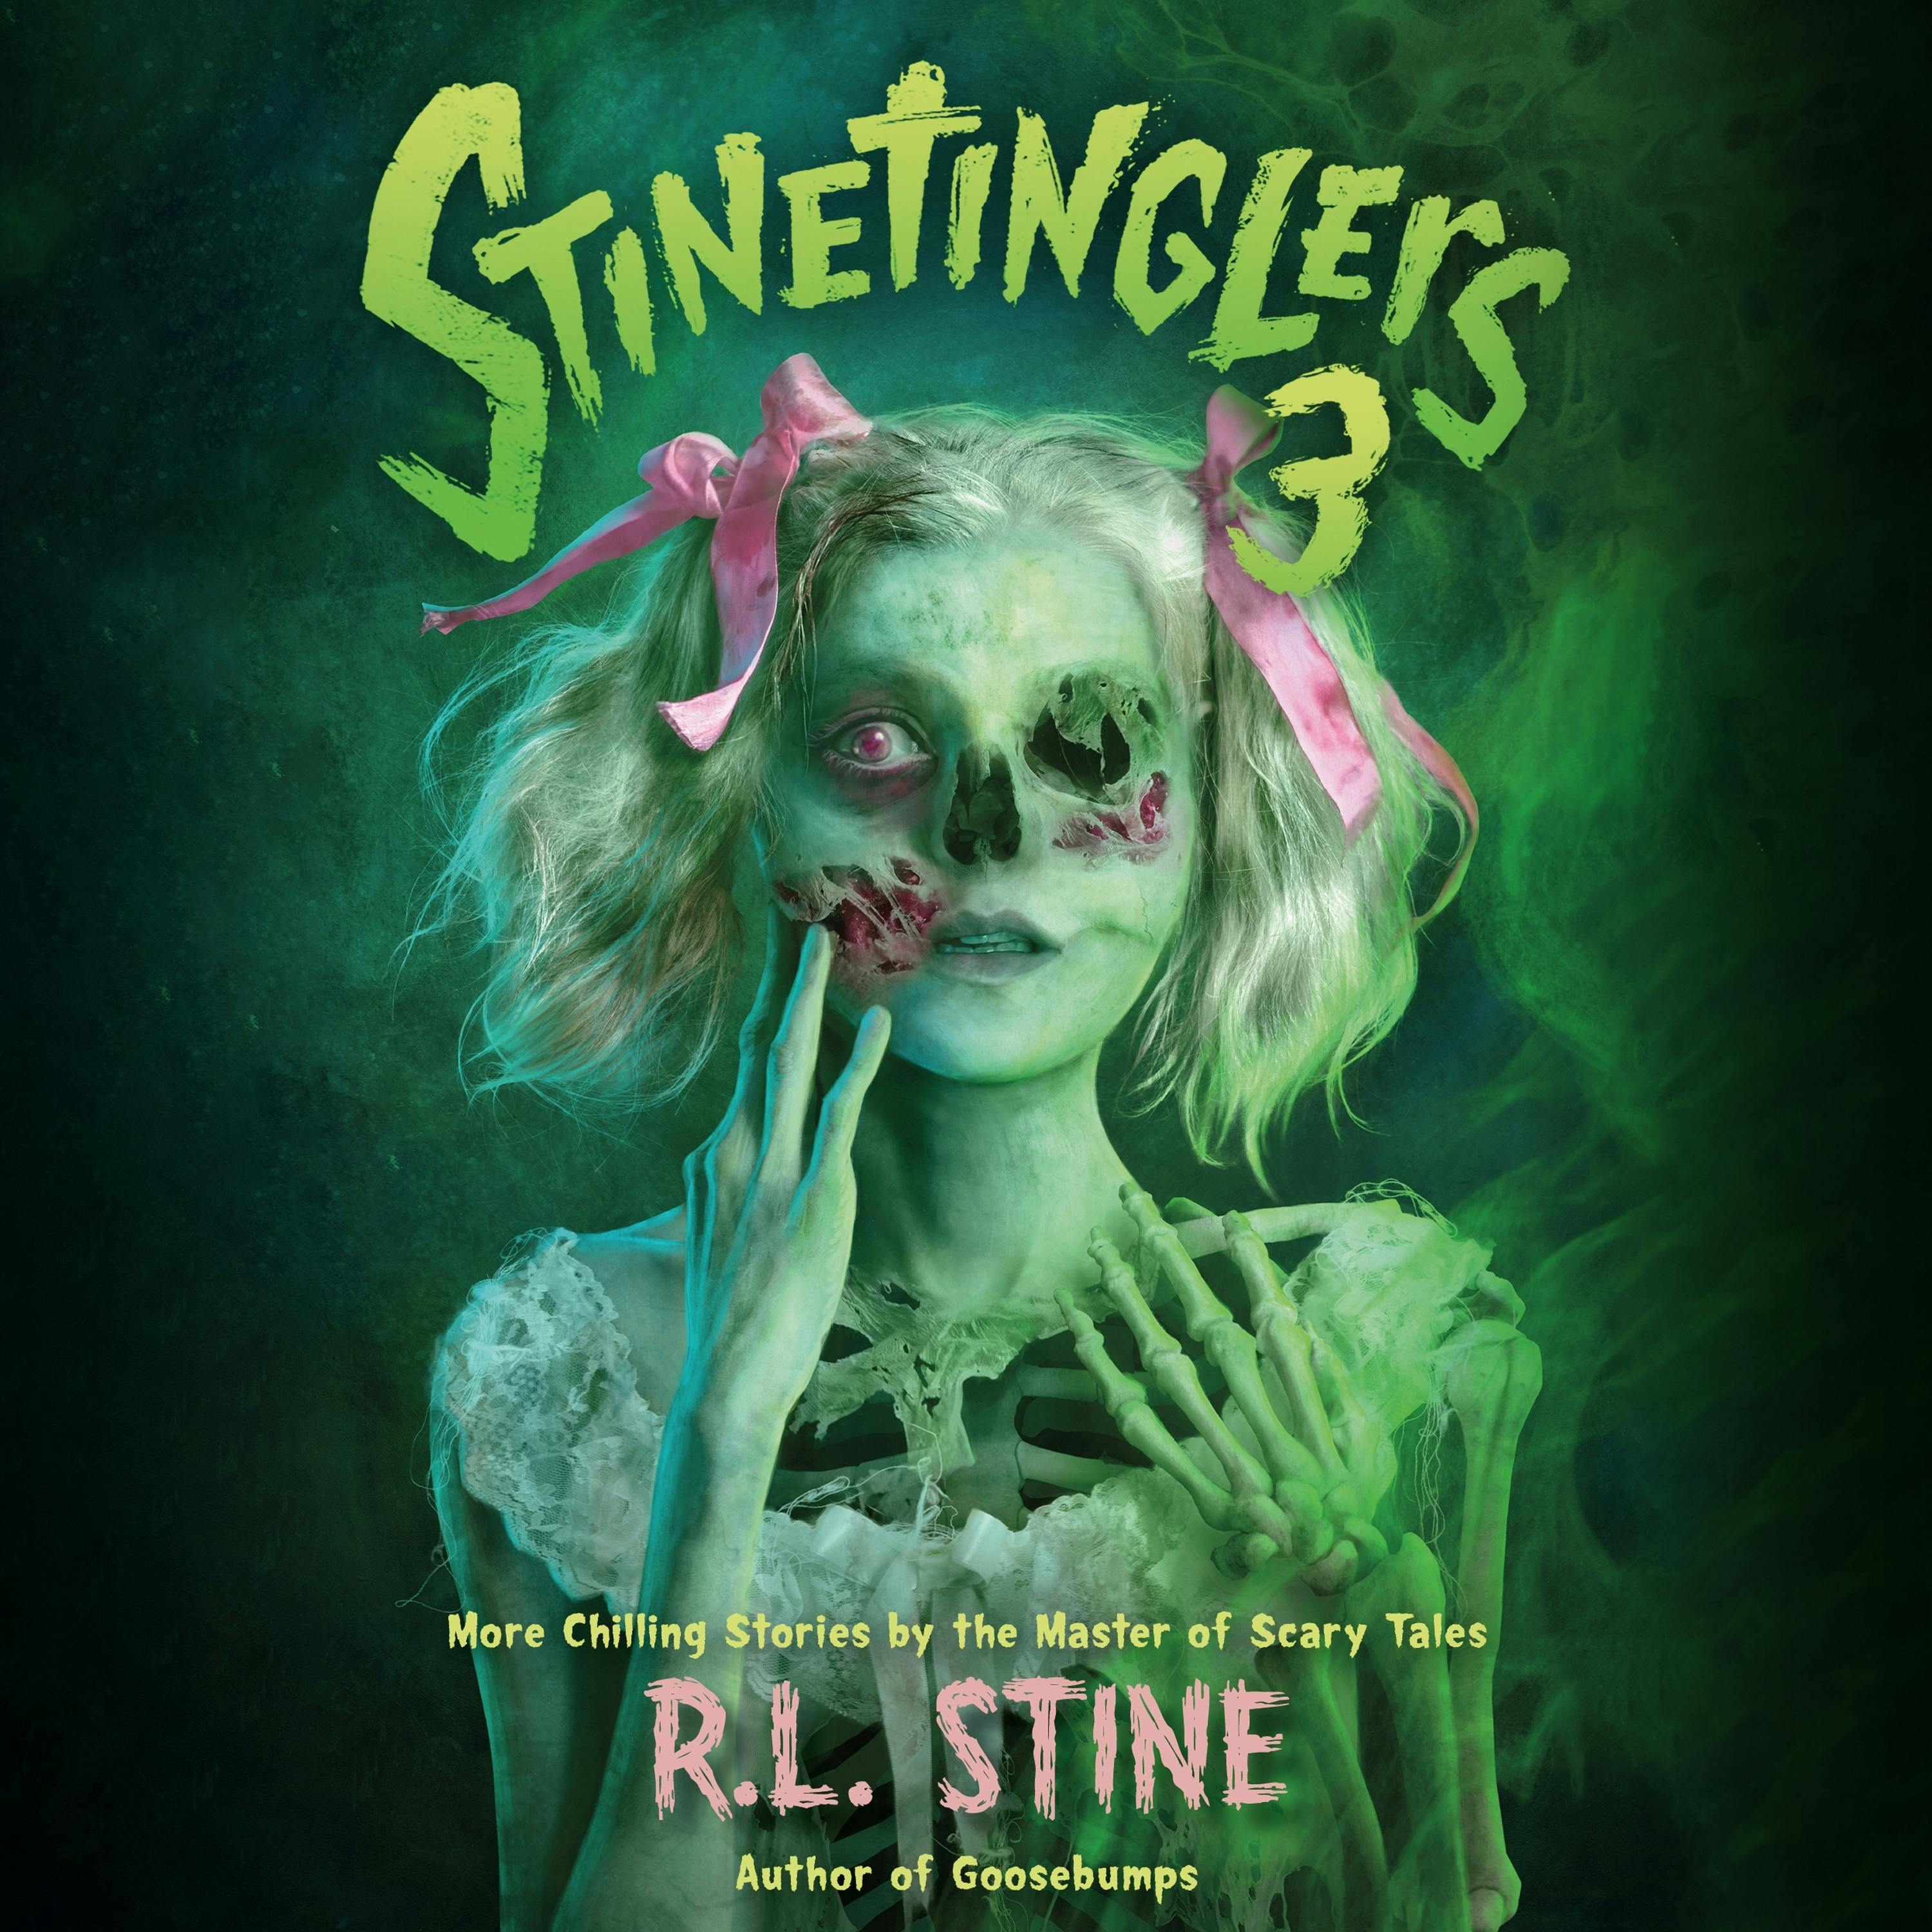 Stinetinglers 3